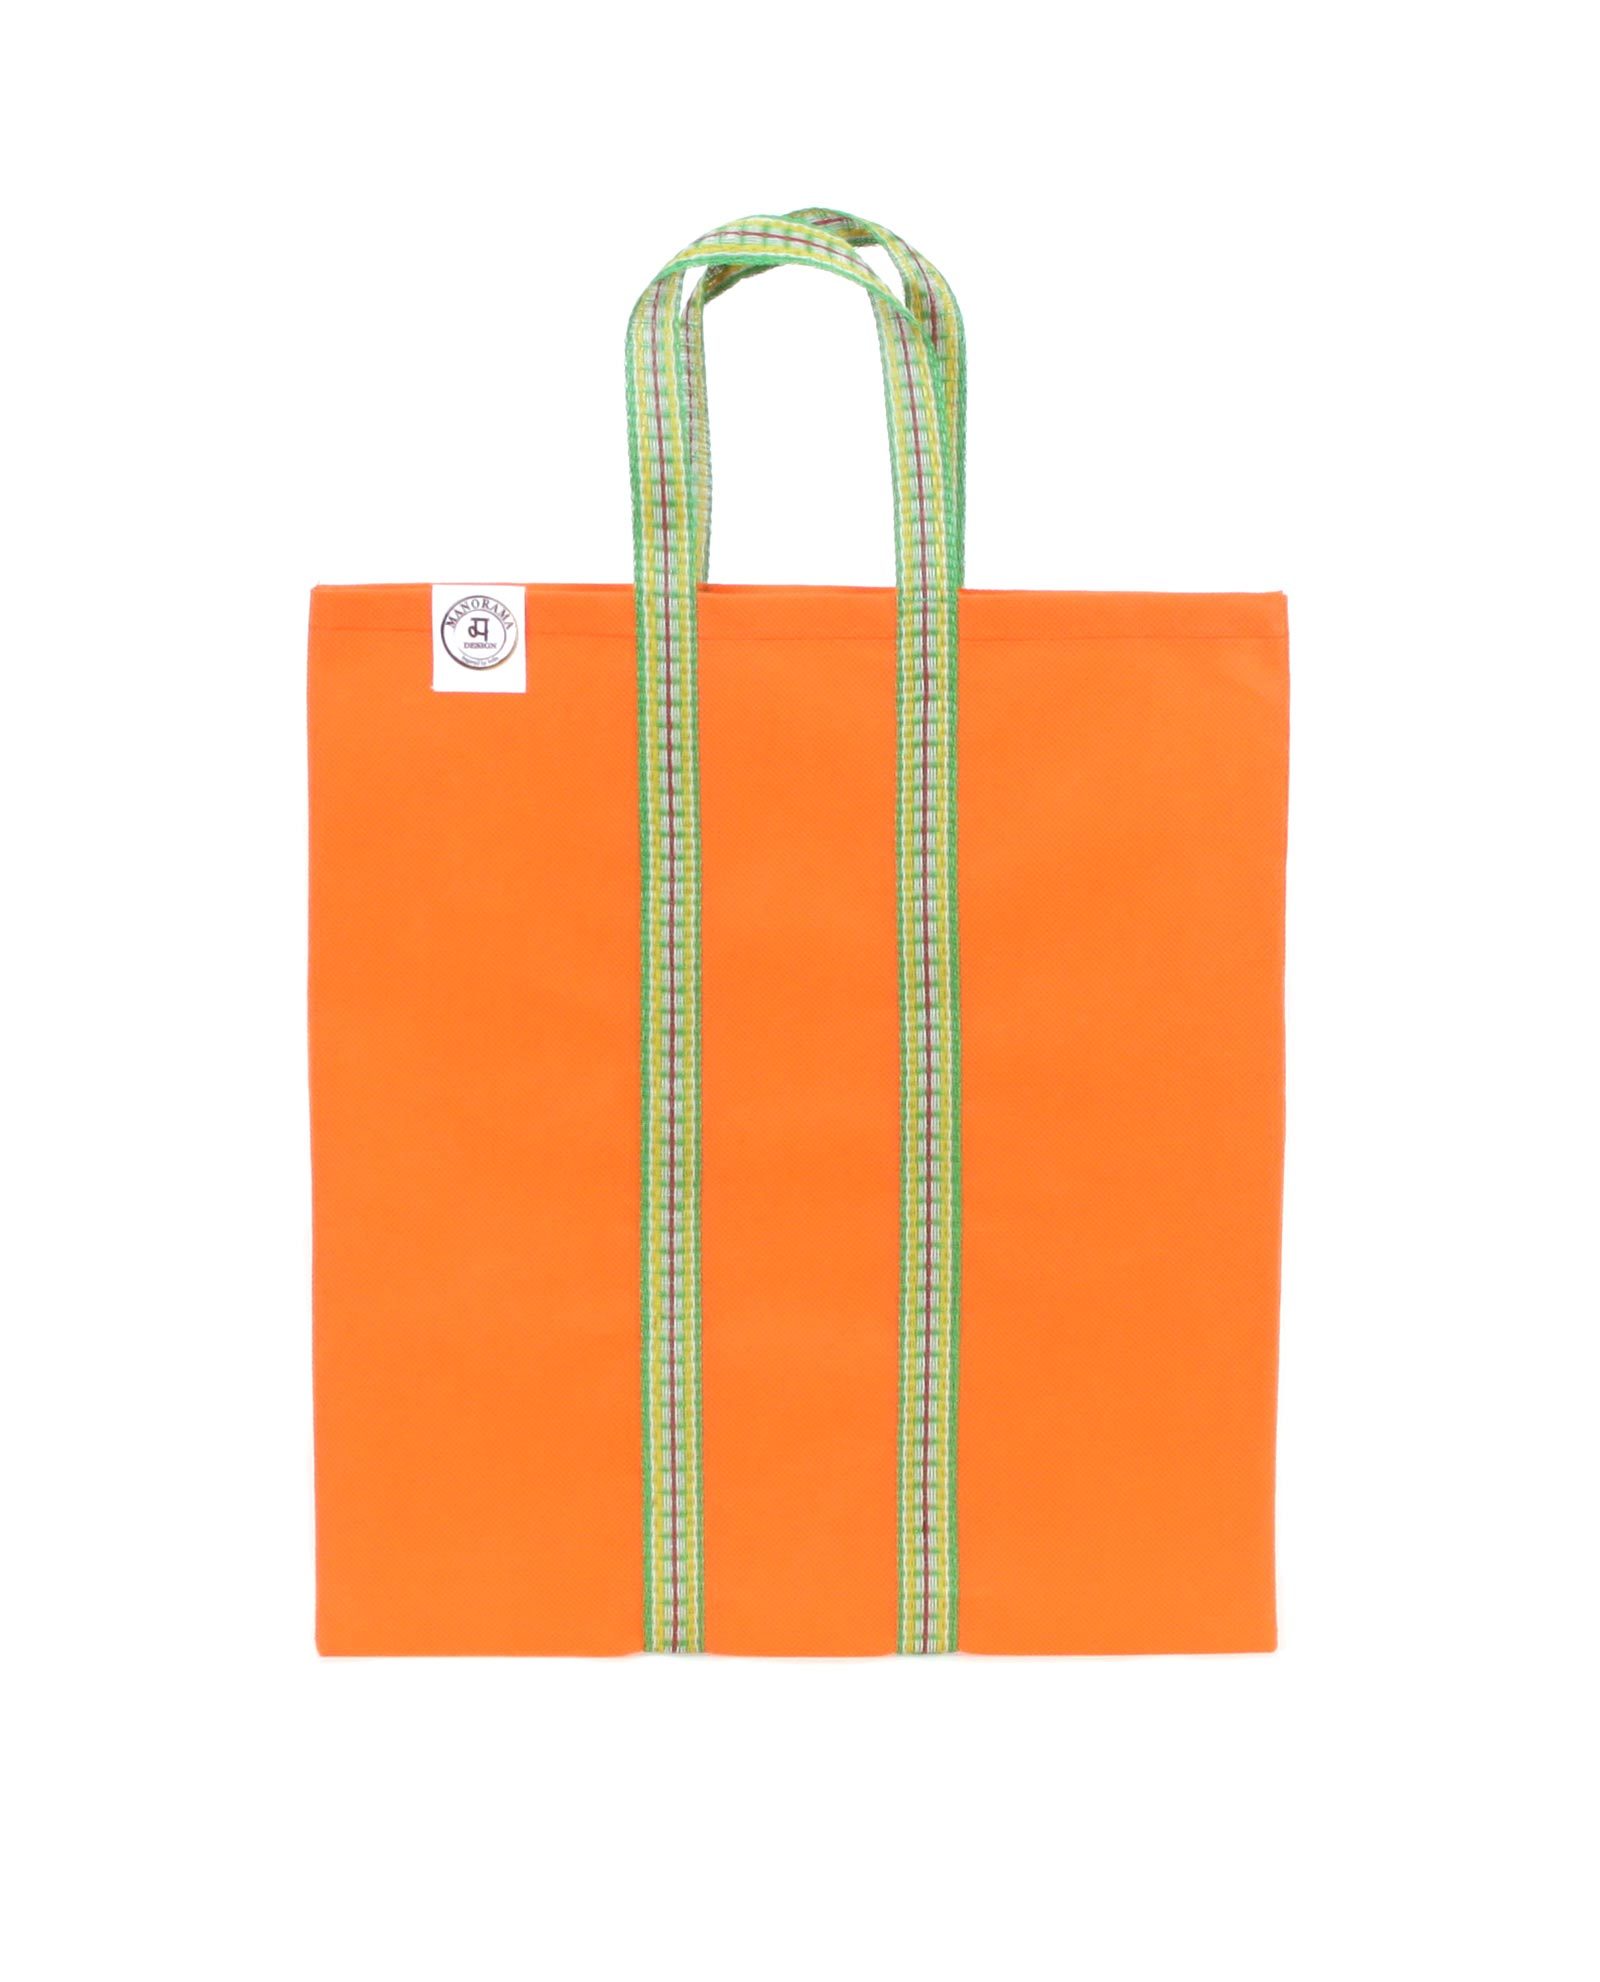 Indisk shoppingväska, totebag, påse, väska - orange